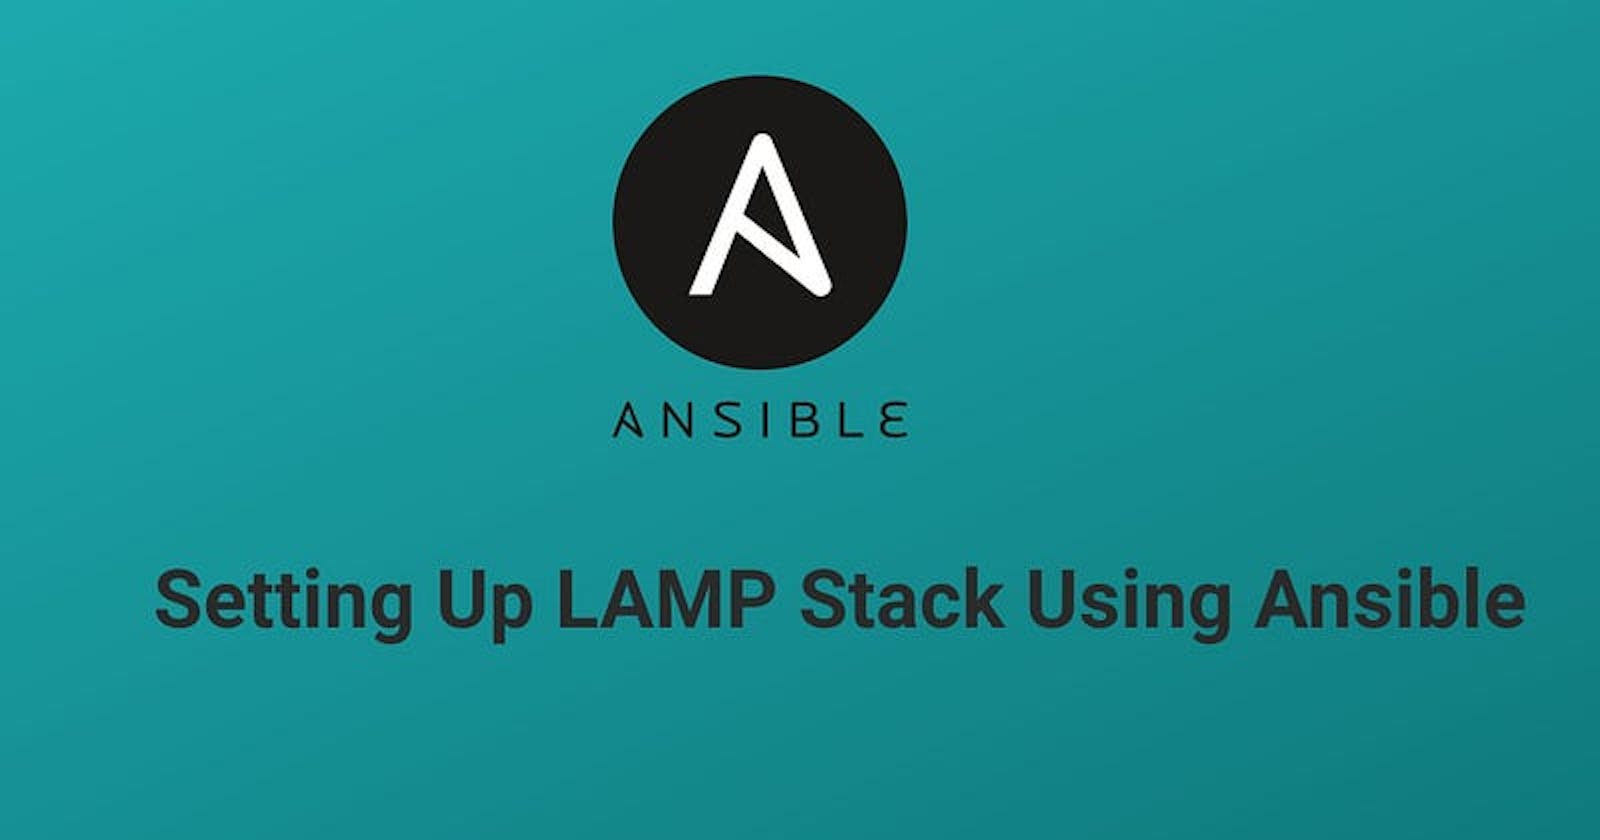 Installing LAMP stack on Ubuntu 20.04 using Ansible in 2022